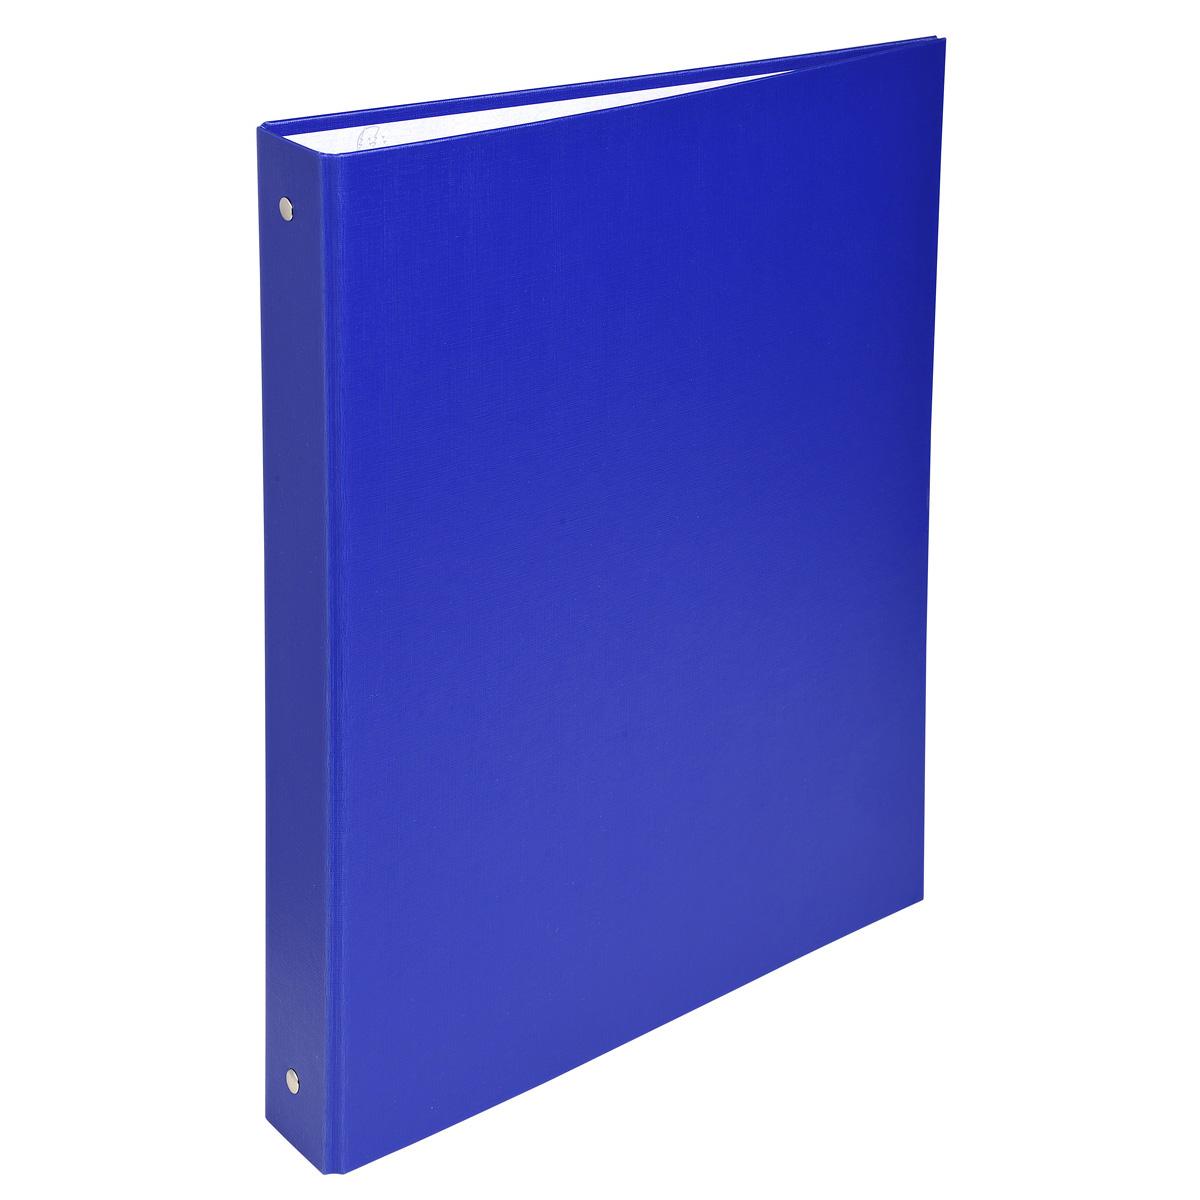 Exacompta Classeur rigide pour feuilles A4 21x29,7 cm bleu, Dos 40 mm